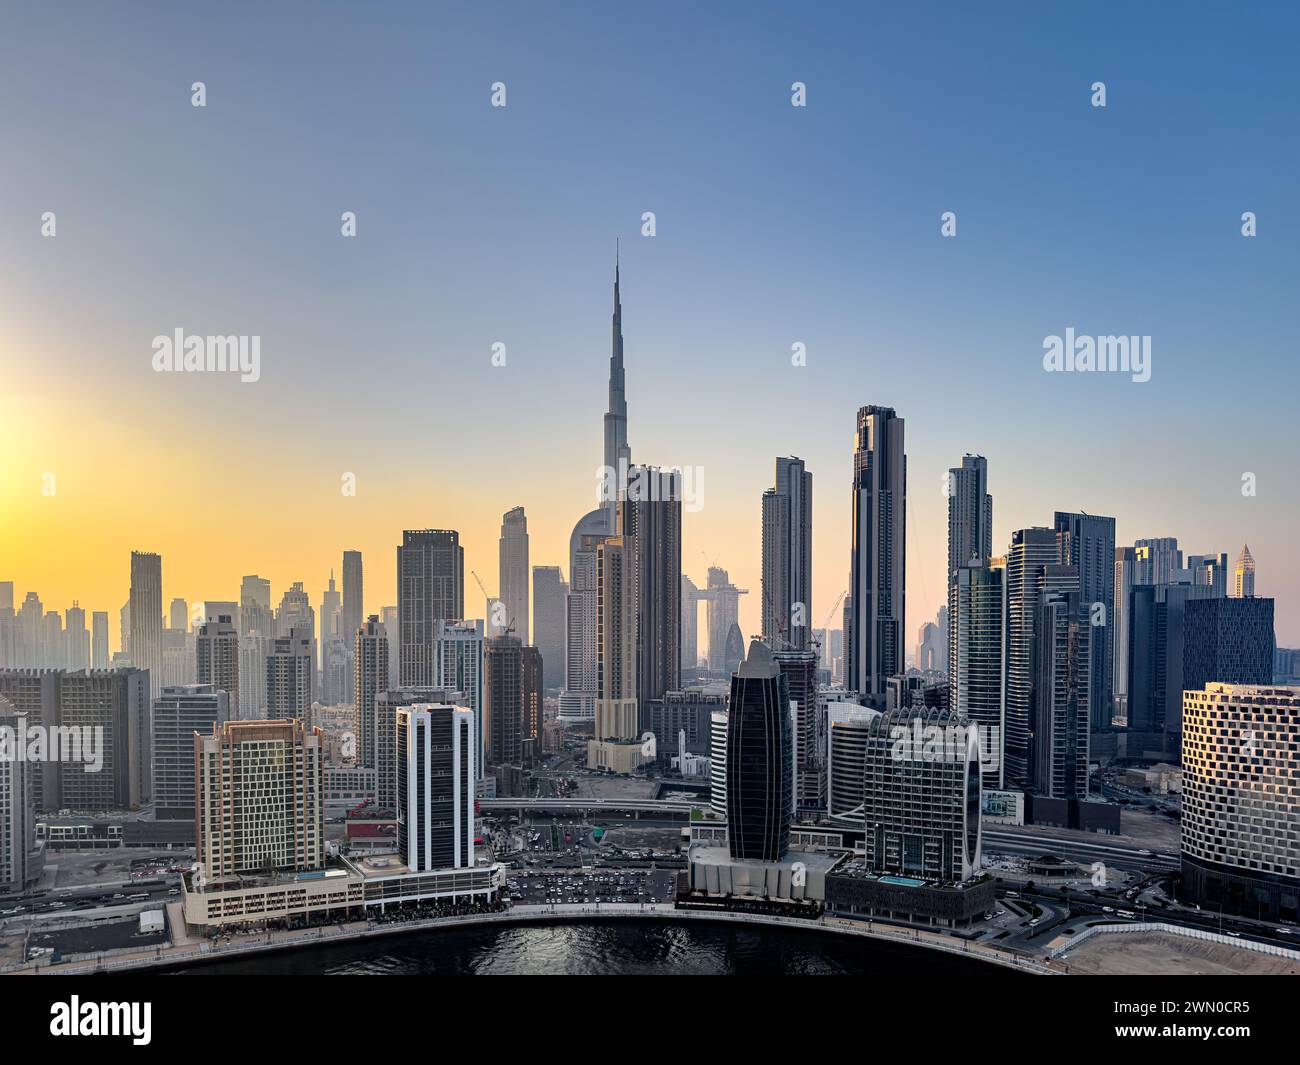 Vista dello skyline di Dubai, tra cui il Burj Khalifa, il grattacielo più alto del mondo visto dalla Business Bay Foto Stock